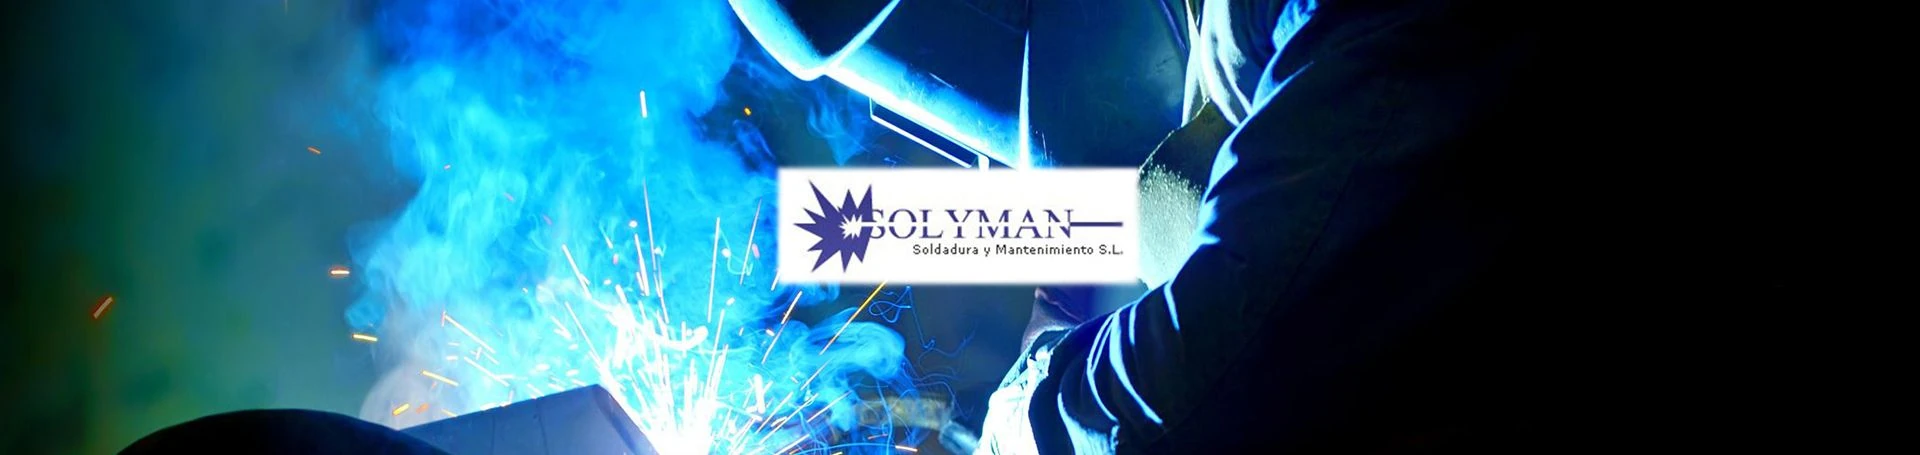 Solyman, nueva página web en Valencia